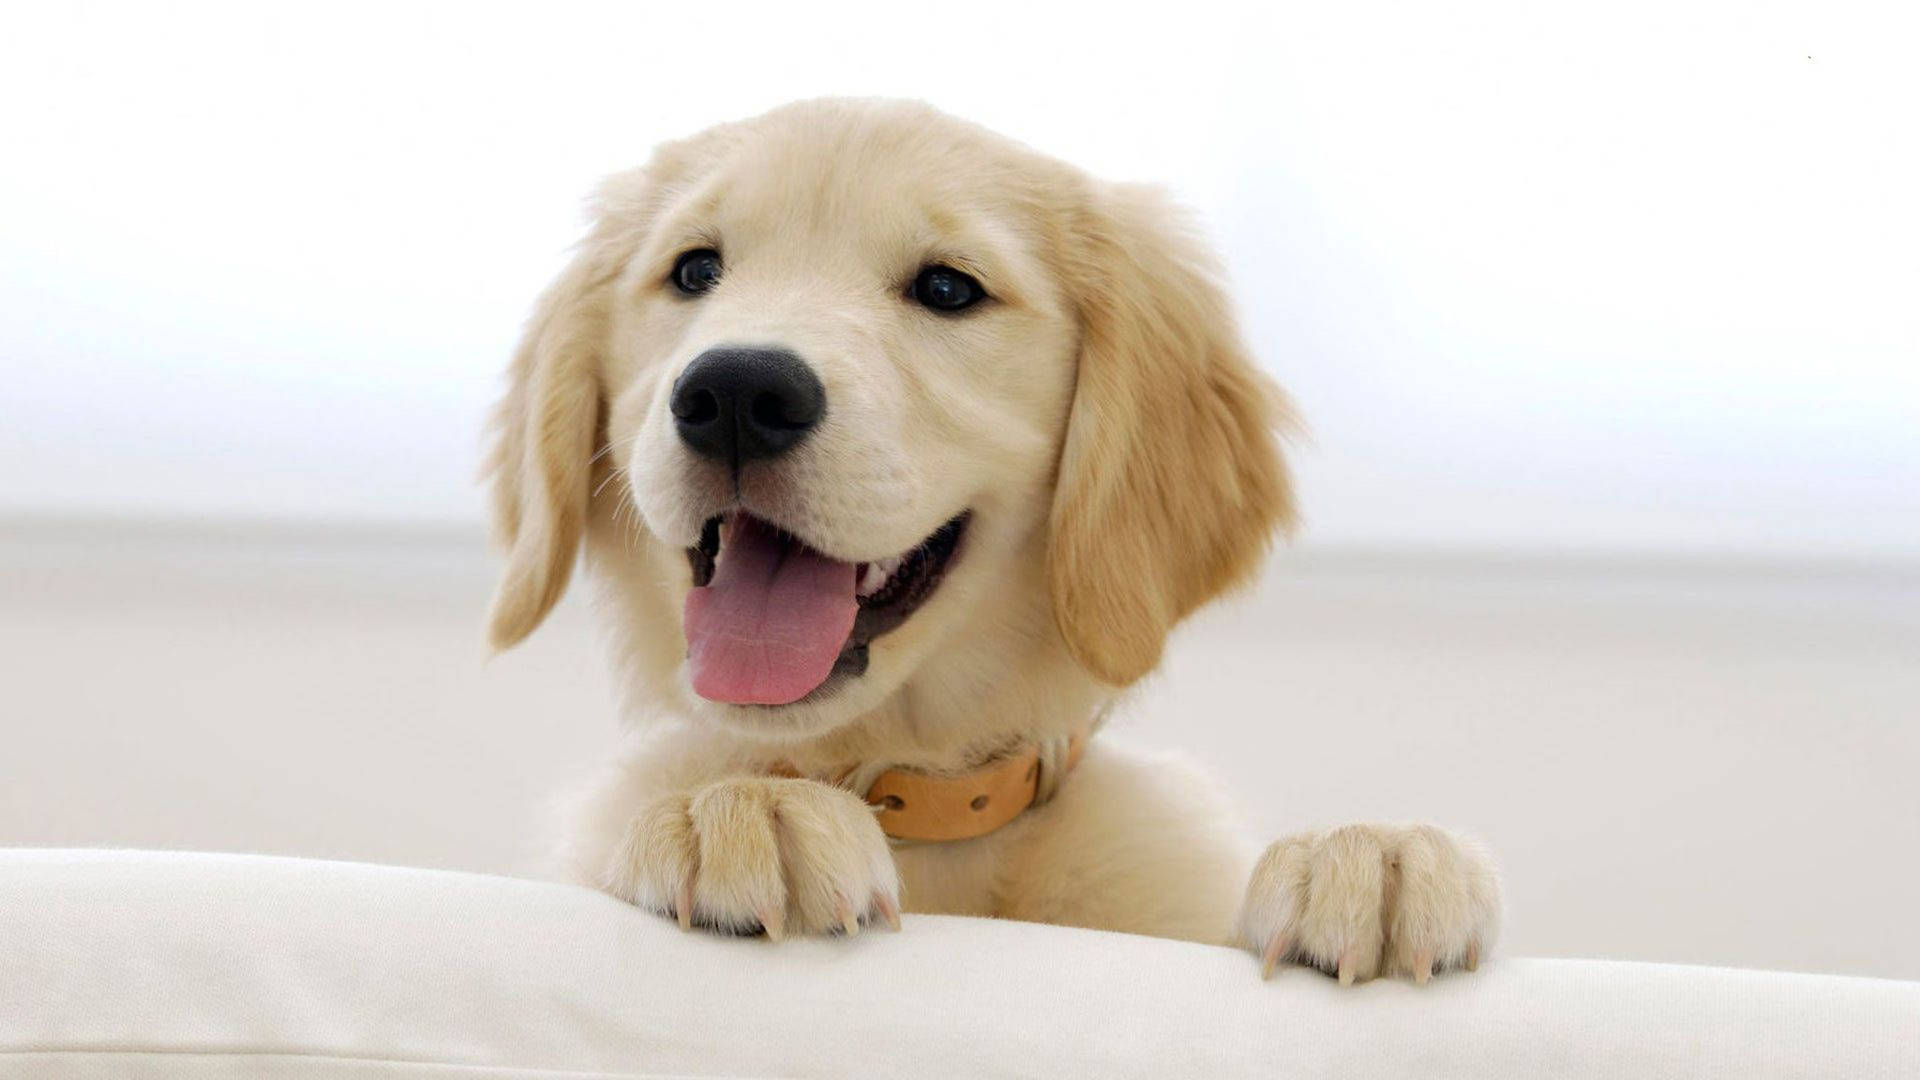 Free Golden Retriever Puppies Wallpaper Downloads, [100+] Golden Retriever  Puppies Wallpapers for FREE 